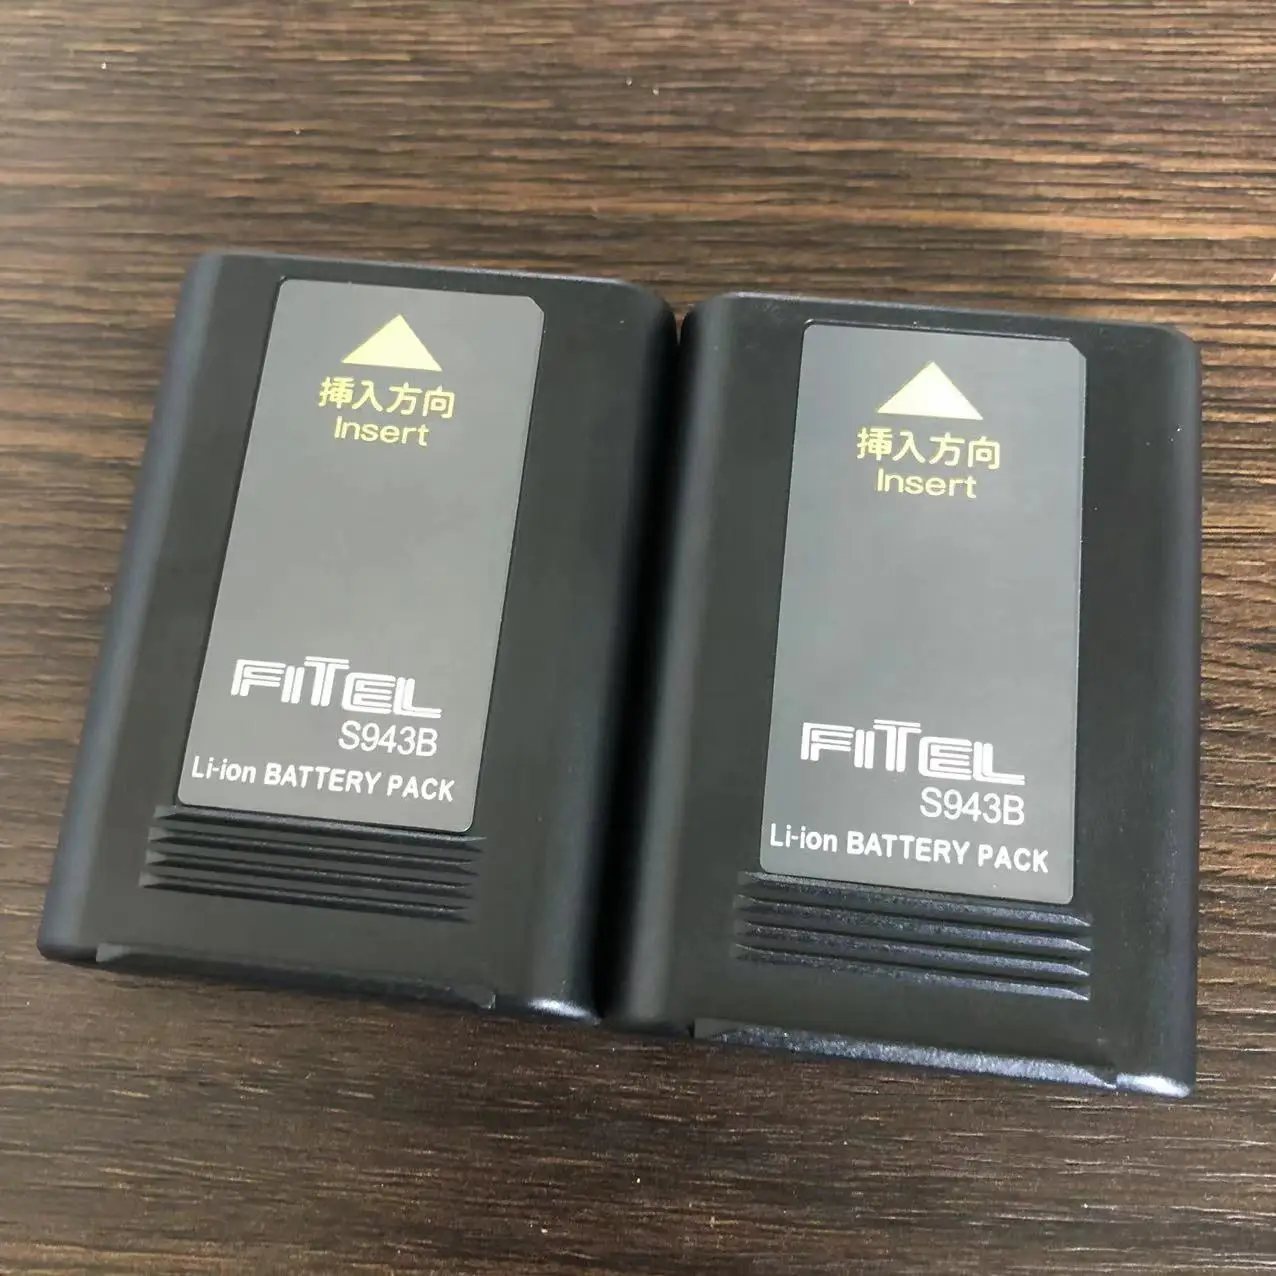 Furukawa Fitel S943B S178A baterija za S153 S153A S177 S178 S178A S121/S122/S123 Zavarivanje baterija baterija baterija baterija baterija S943B Slika 2